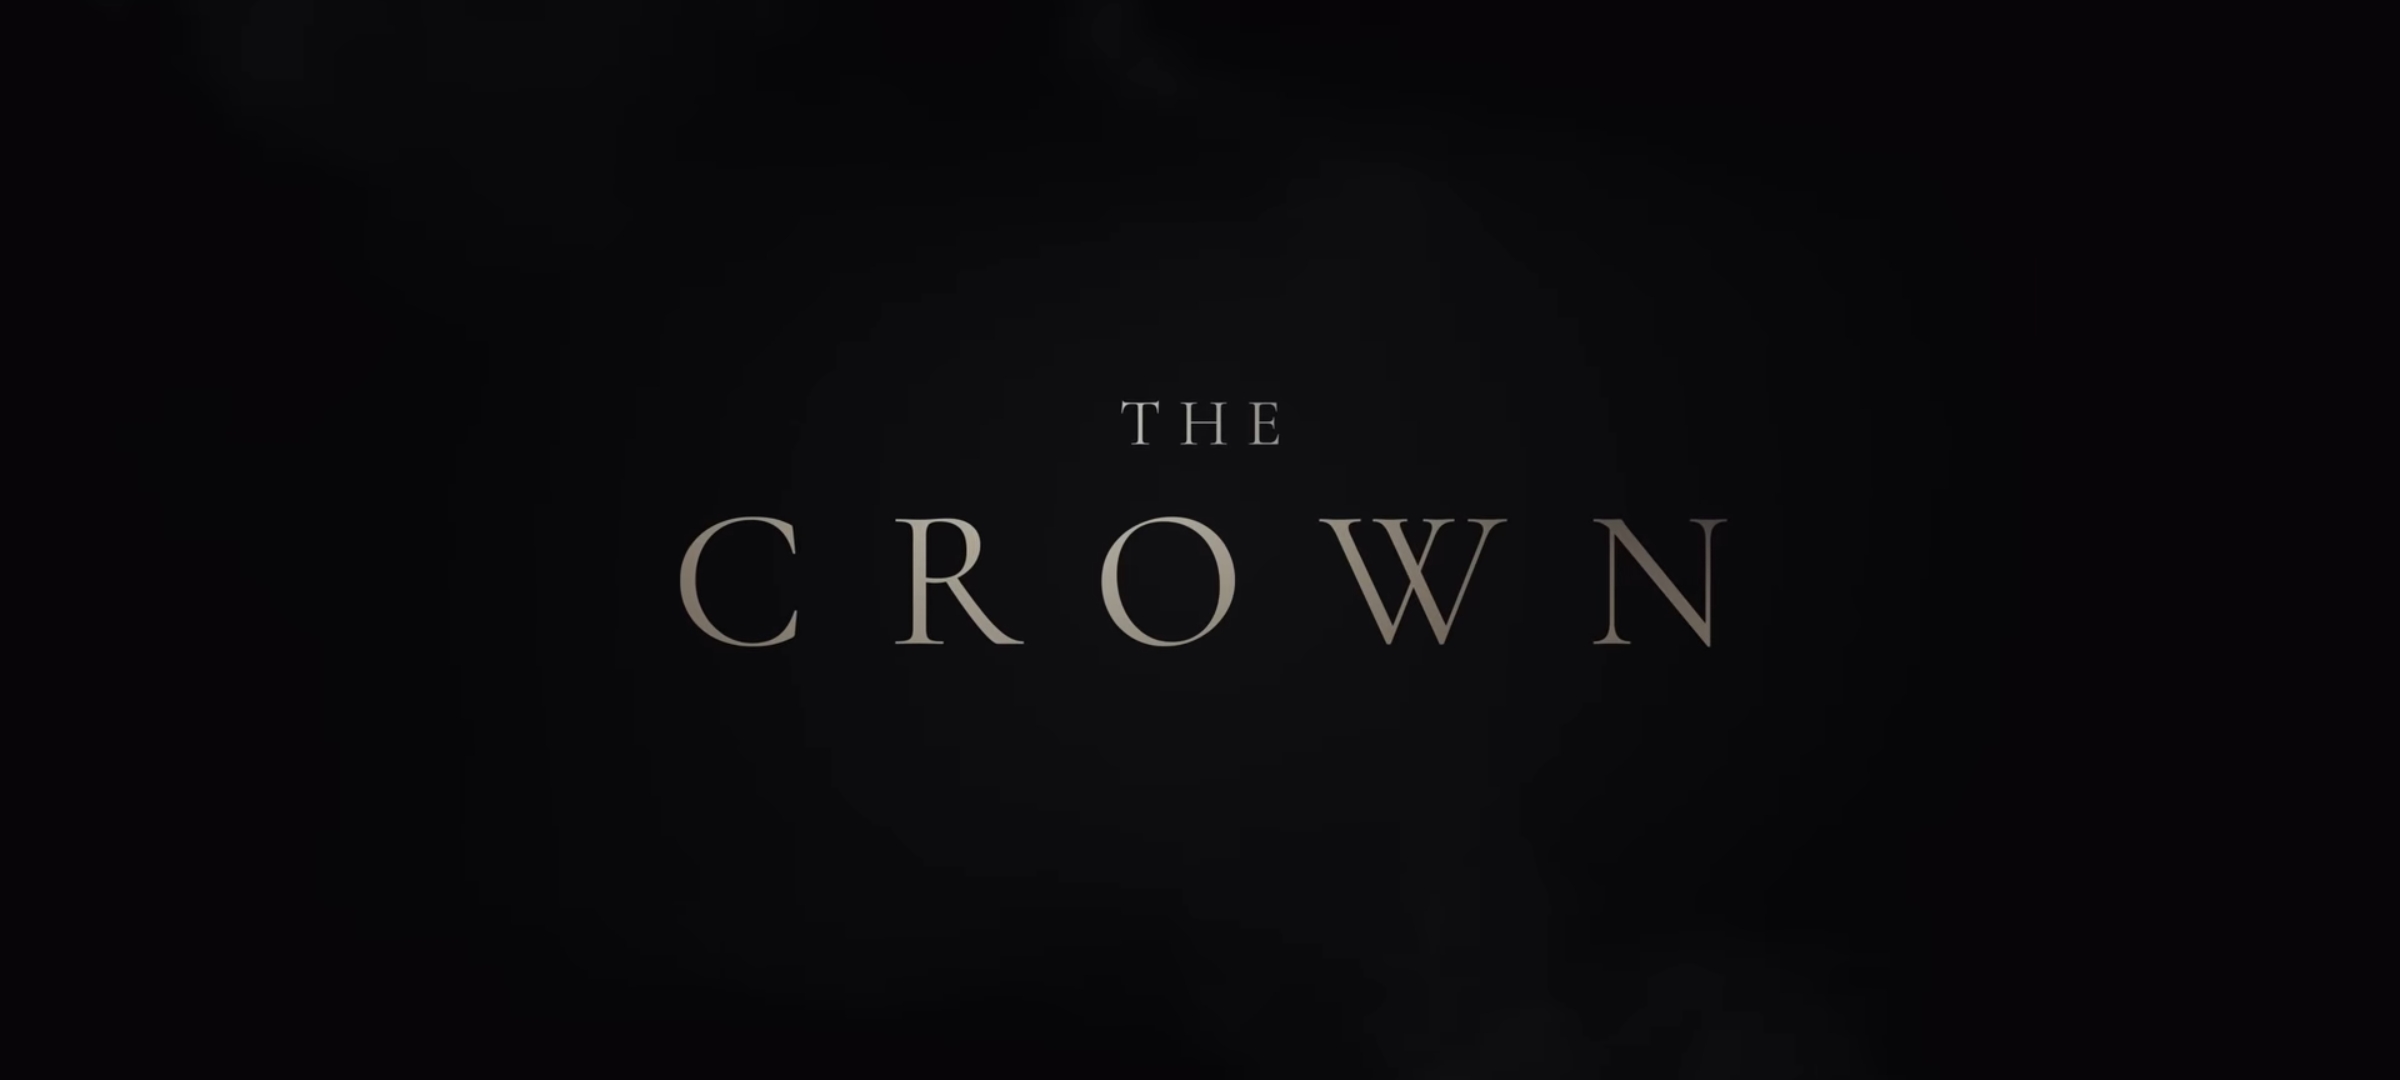 The Crown Season 5